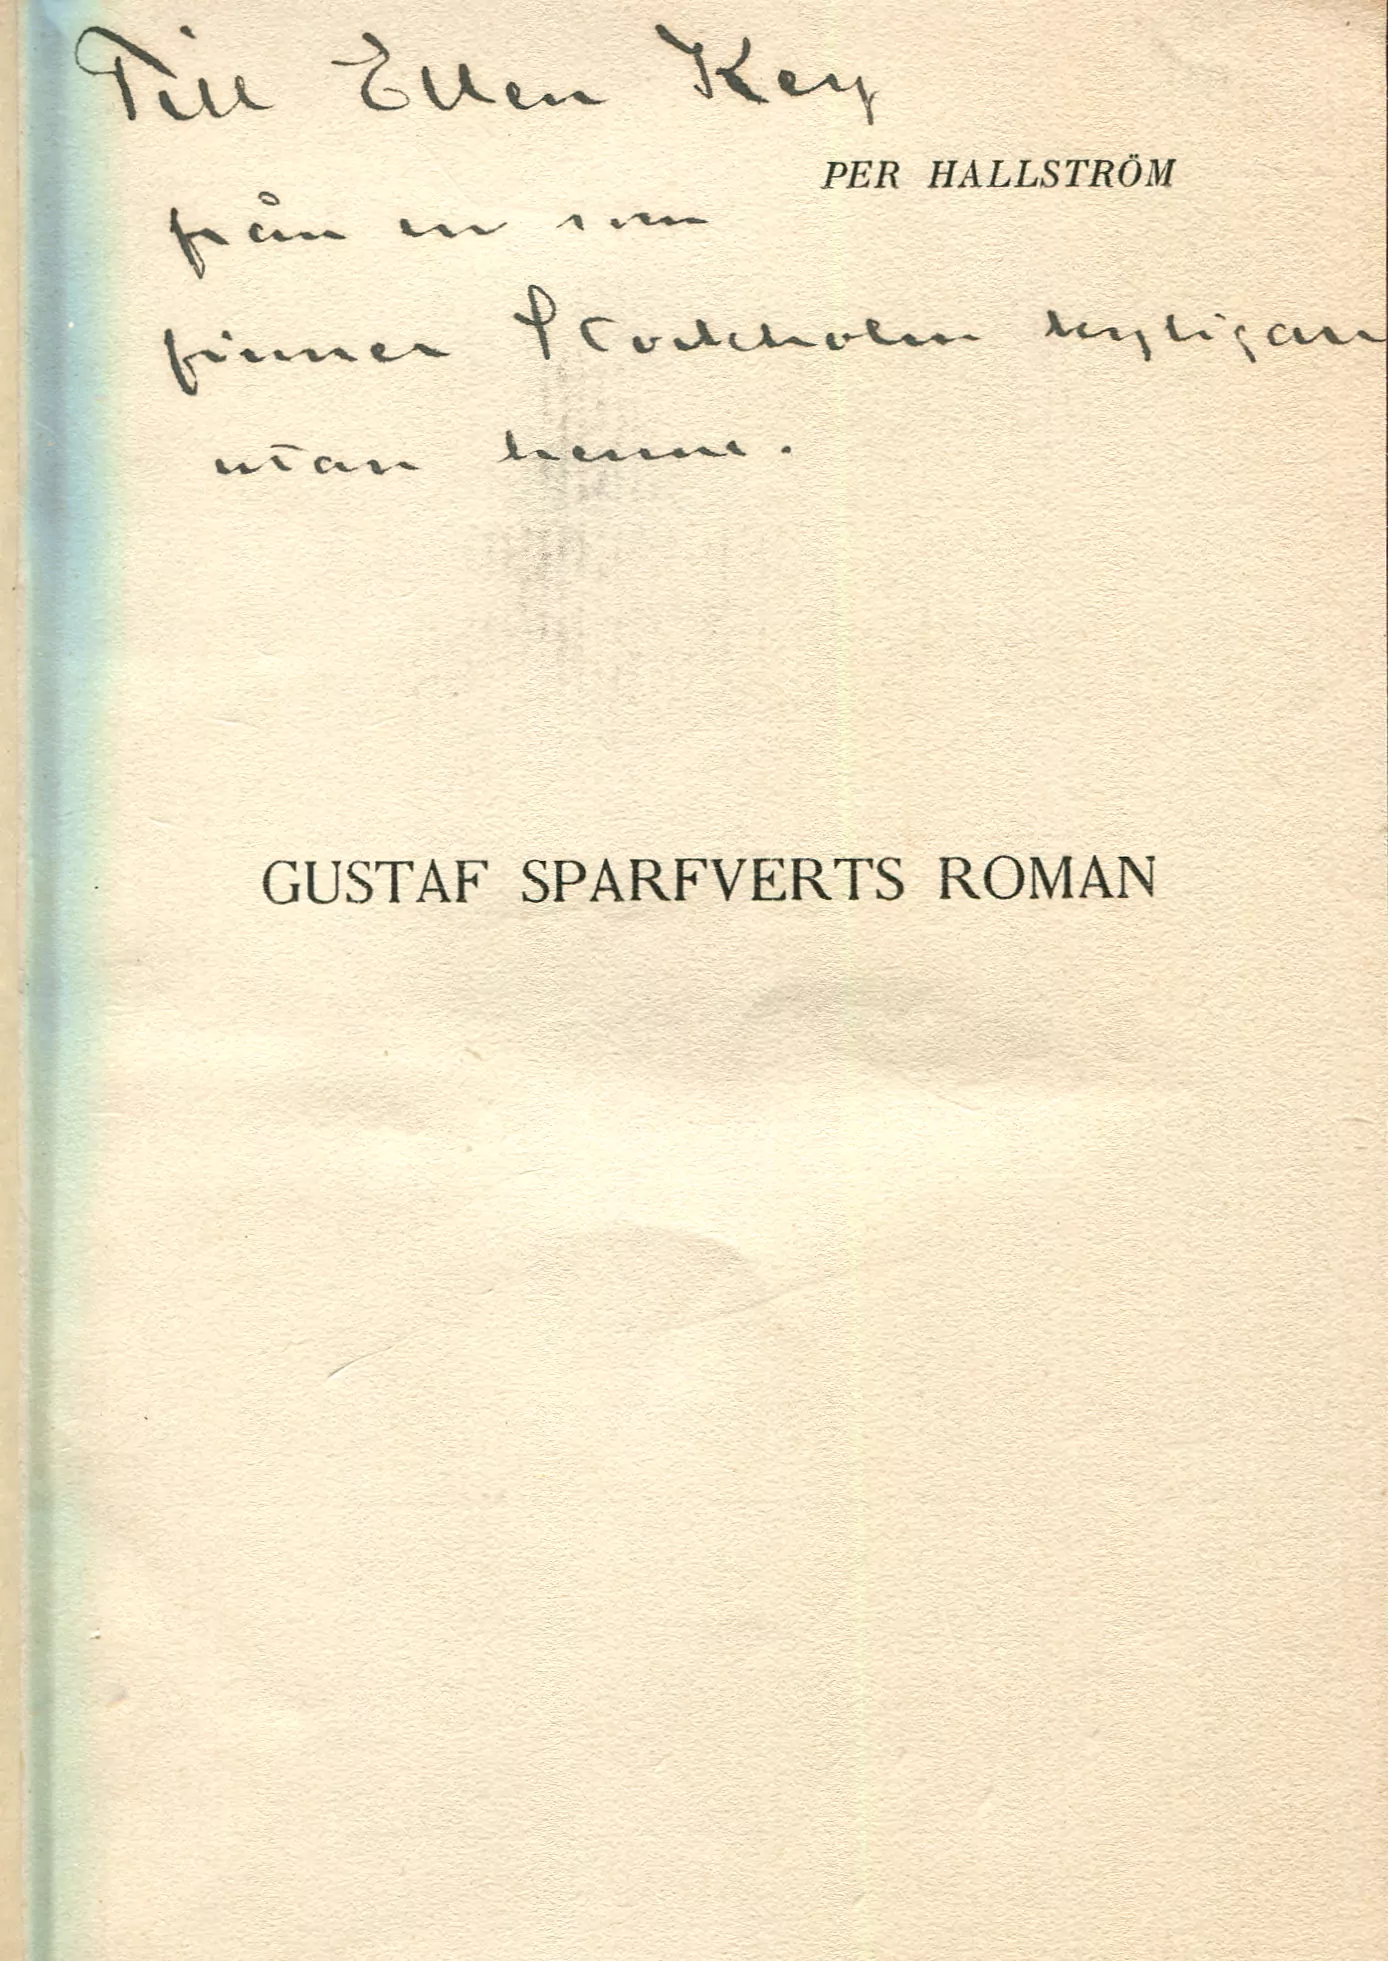 Gustaf Sparfverts roman , Stockholm 1903